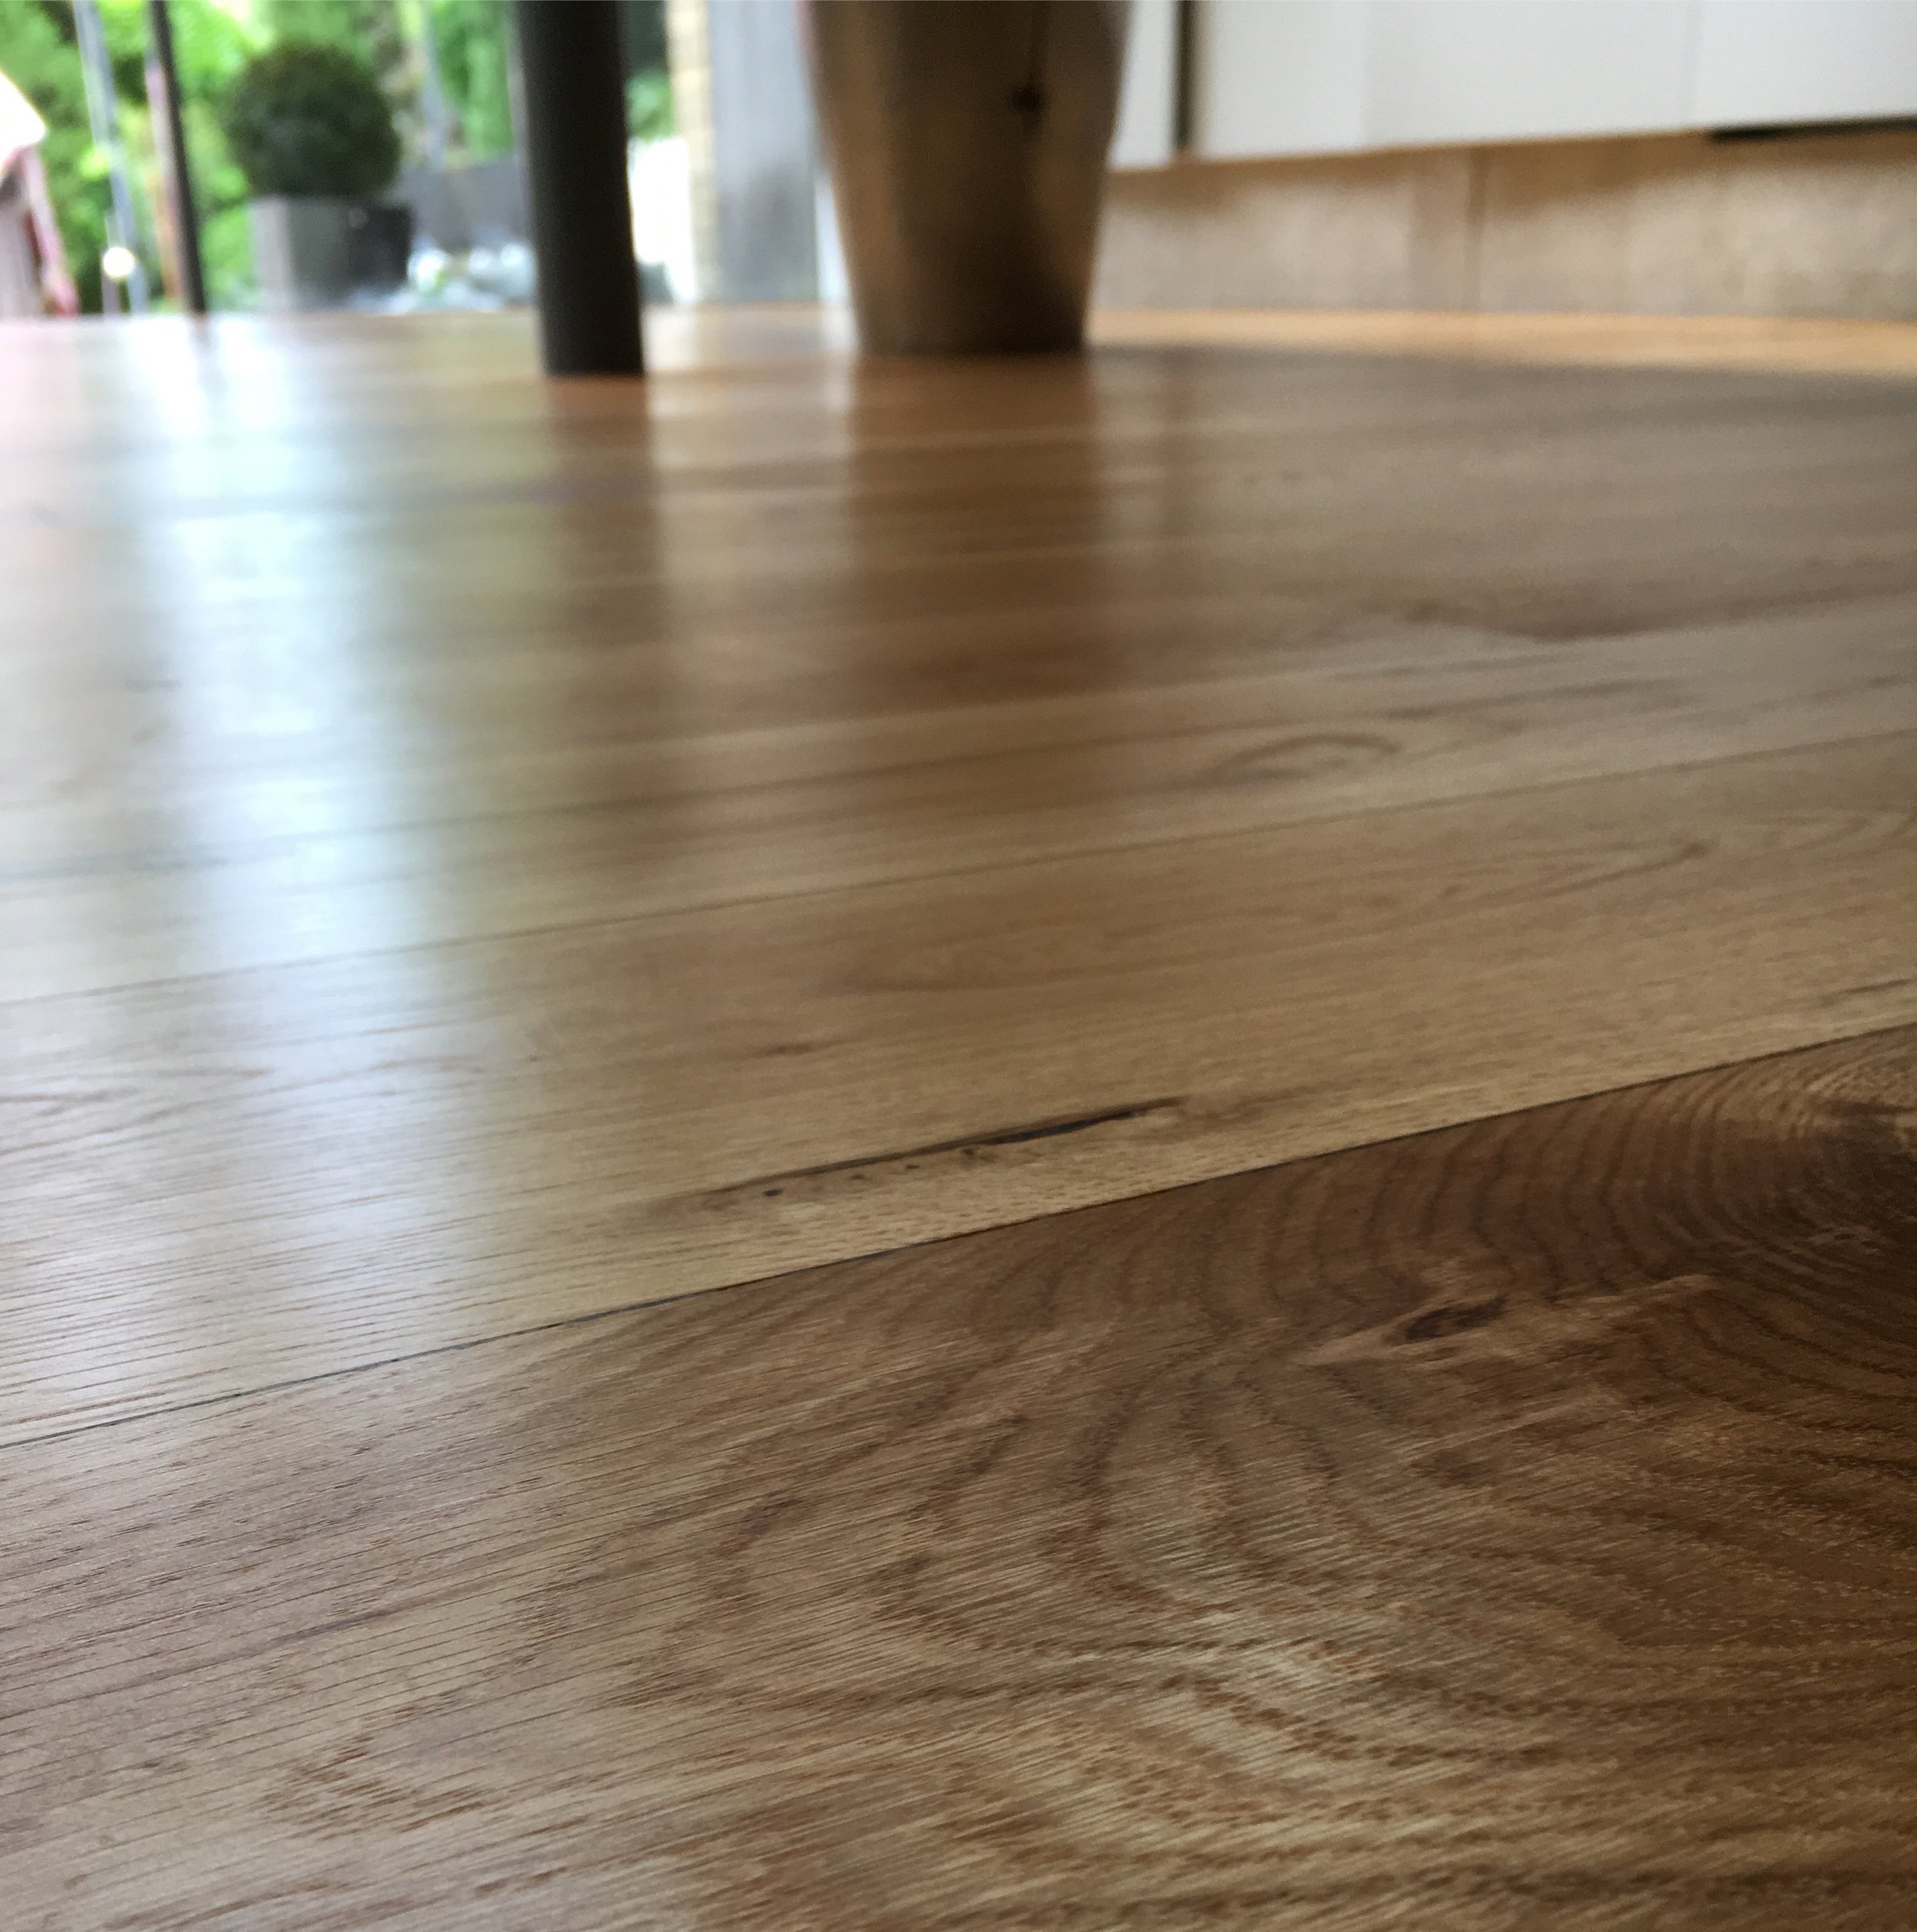 Oiled oak kitchen floor 